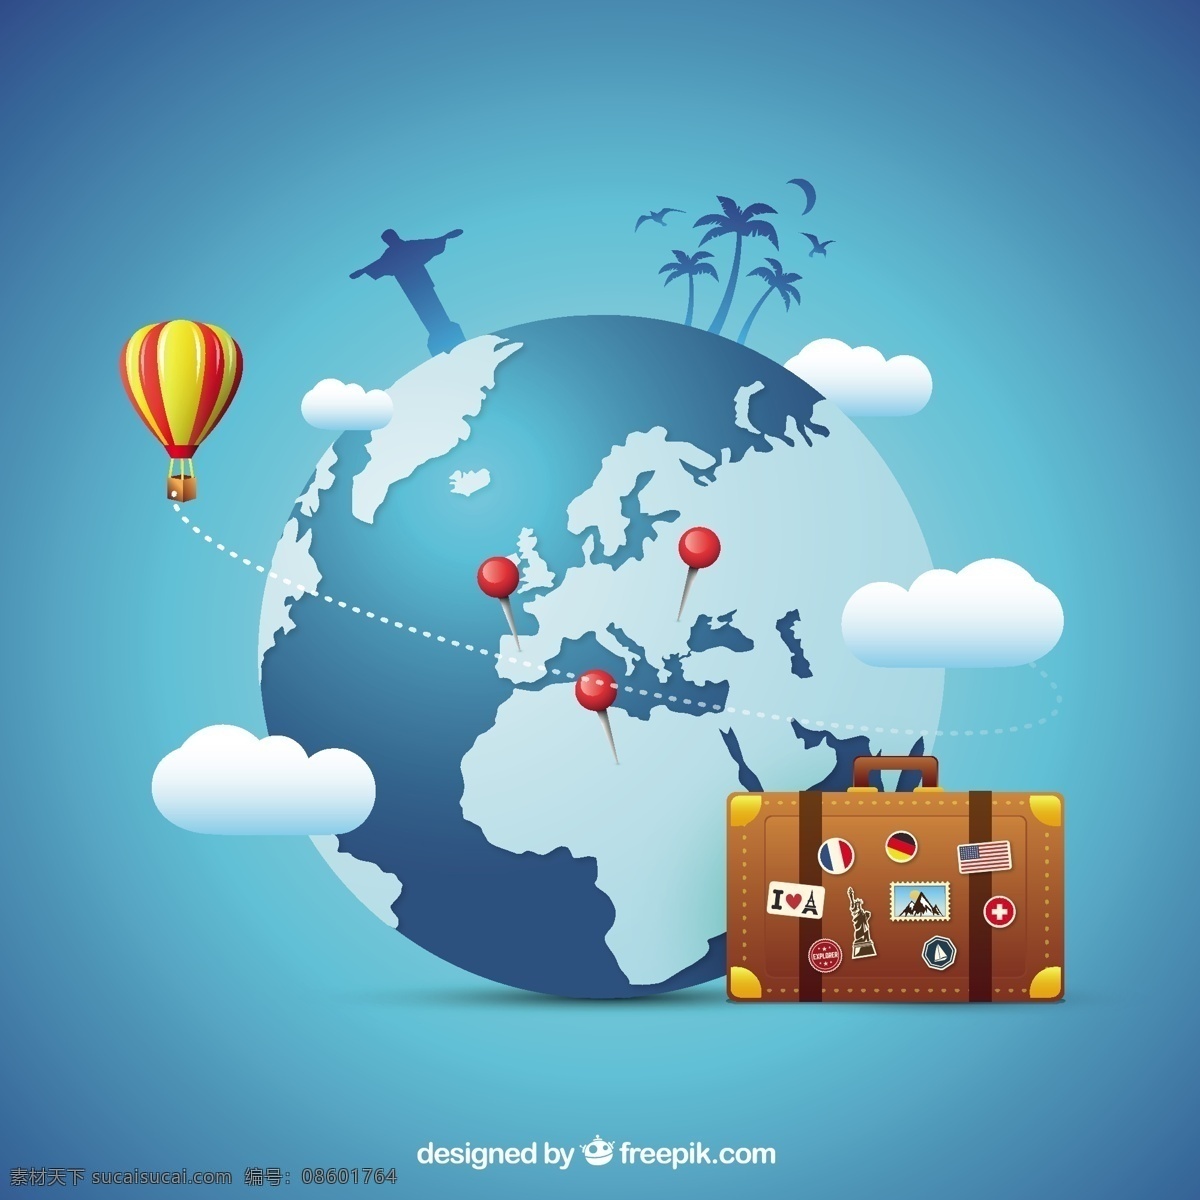 旅游 概念 背景 世界 地球 气球 热气球 度假 旅行 世界各地 假日 航空气球 纪念碑 青色 天蓝色